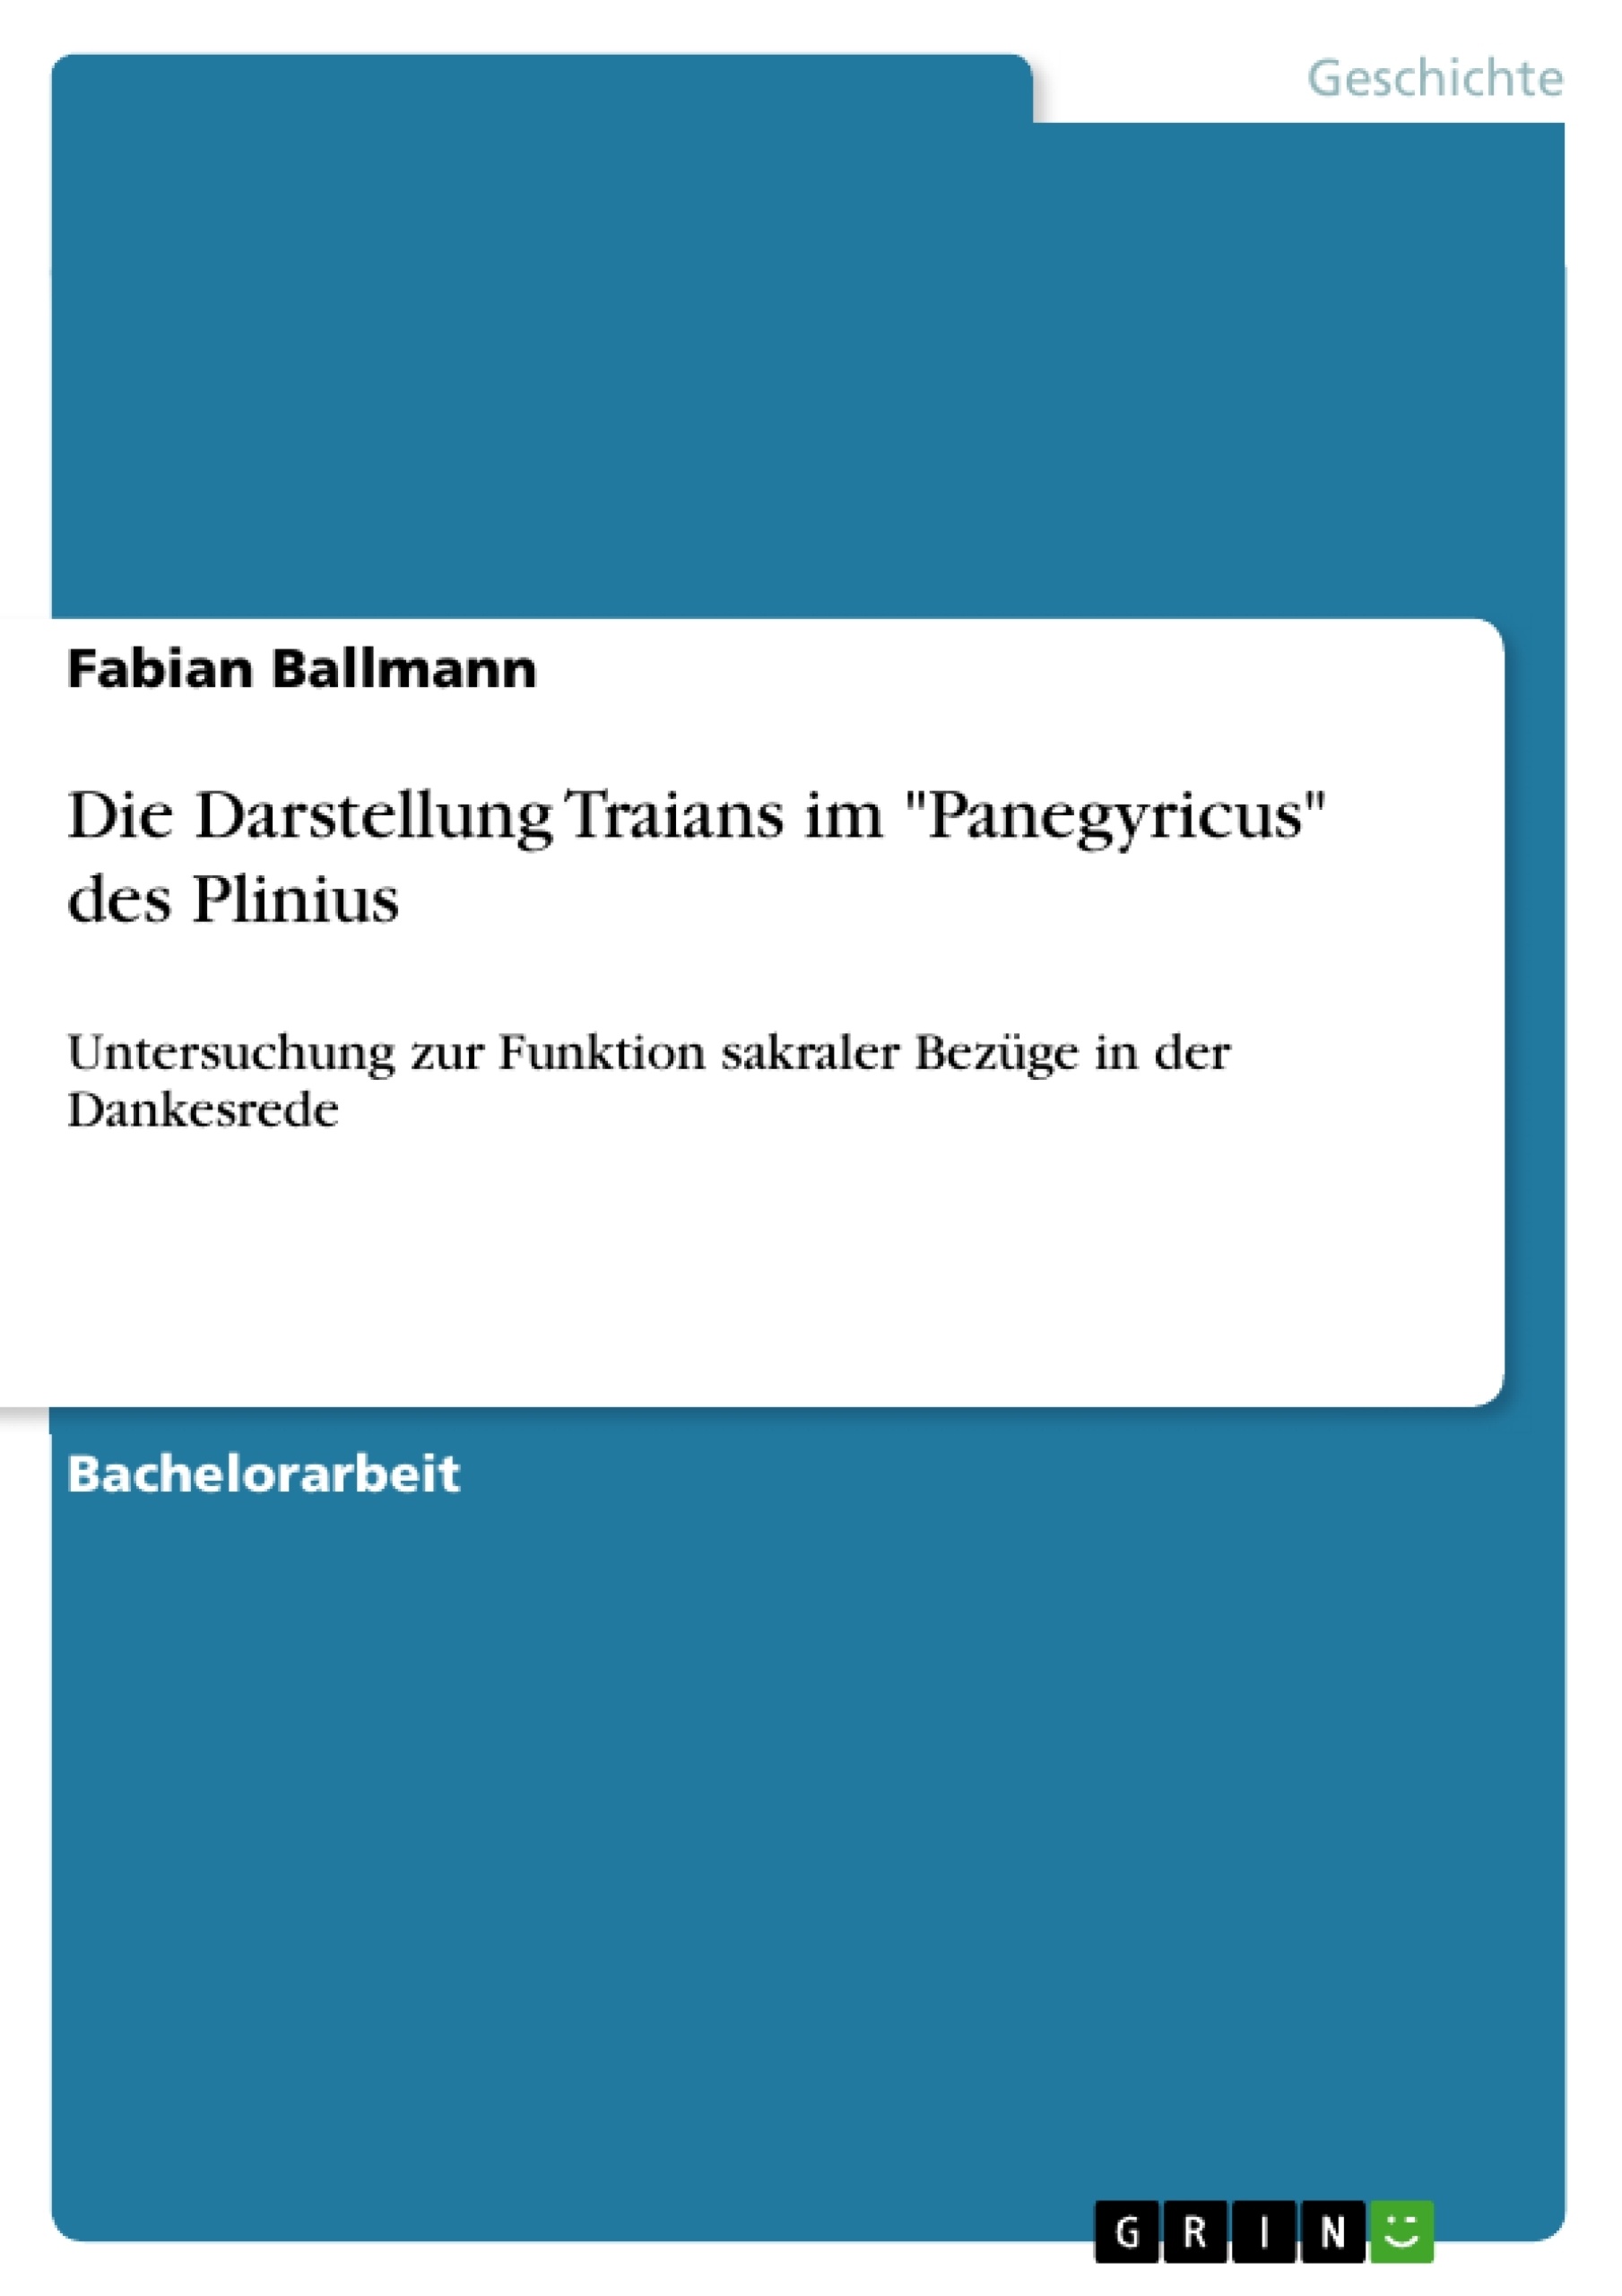 Title: Die Darstellung Traians im "Panegyricus" des Plinius